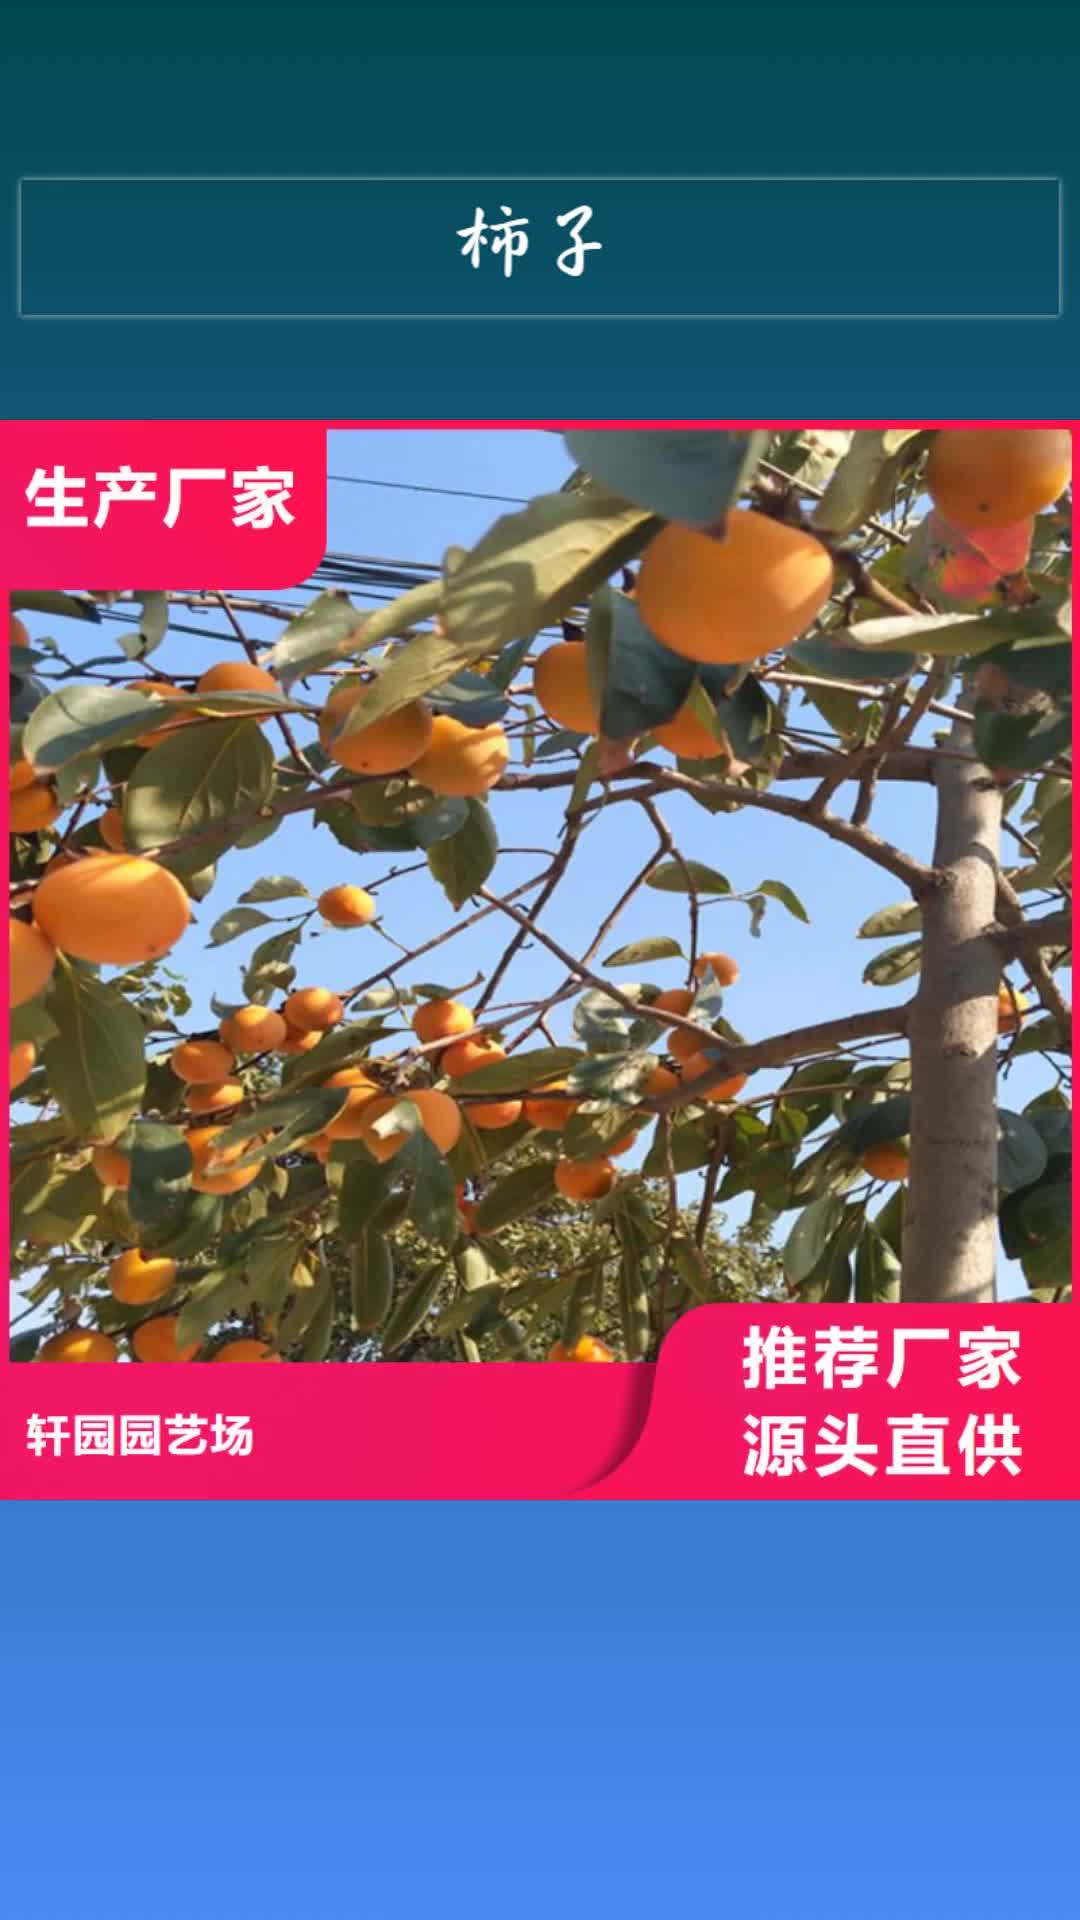 秦皇岛【柿子】,苹果苗好产品价格低